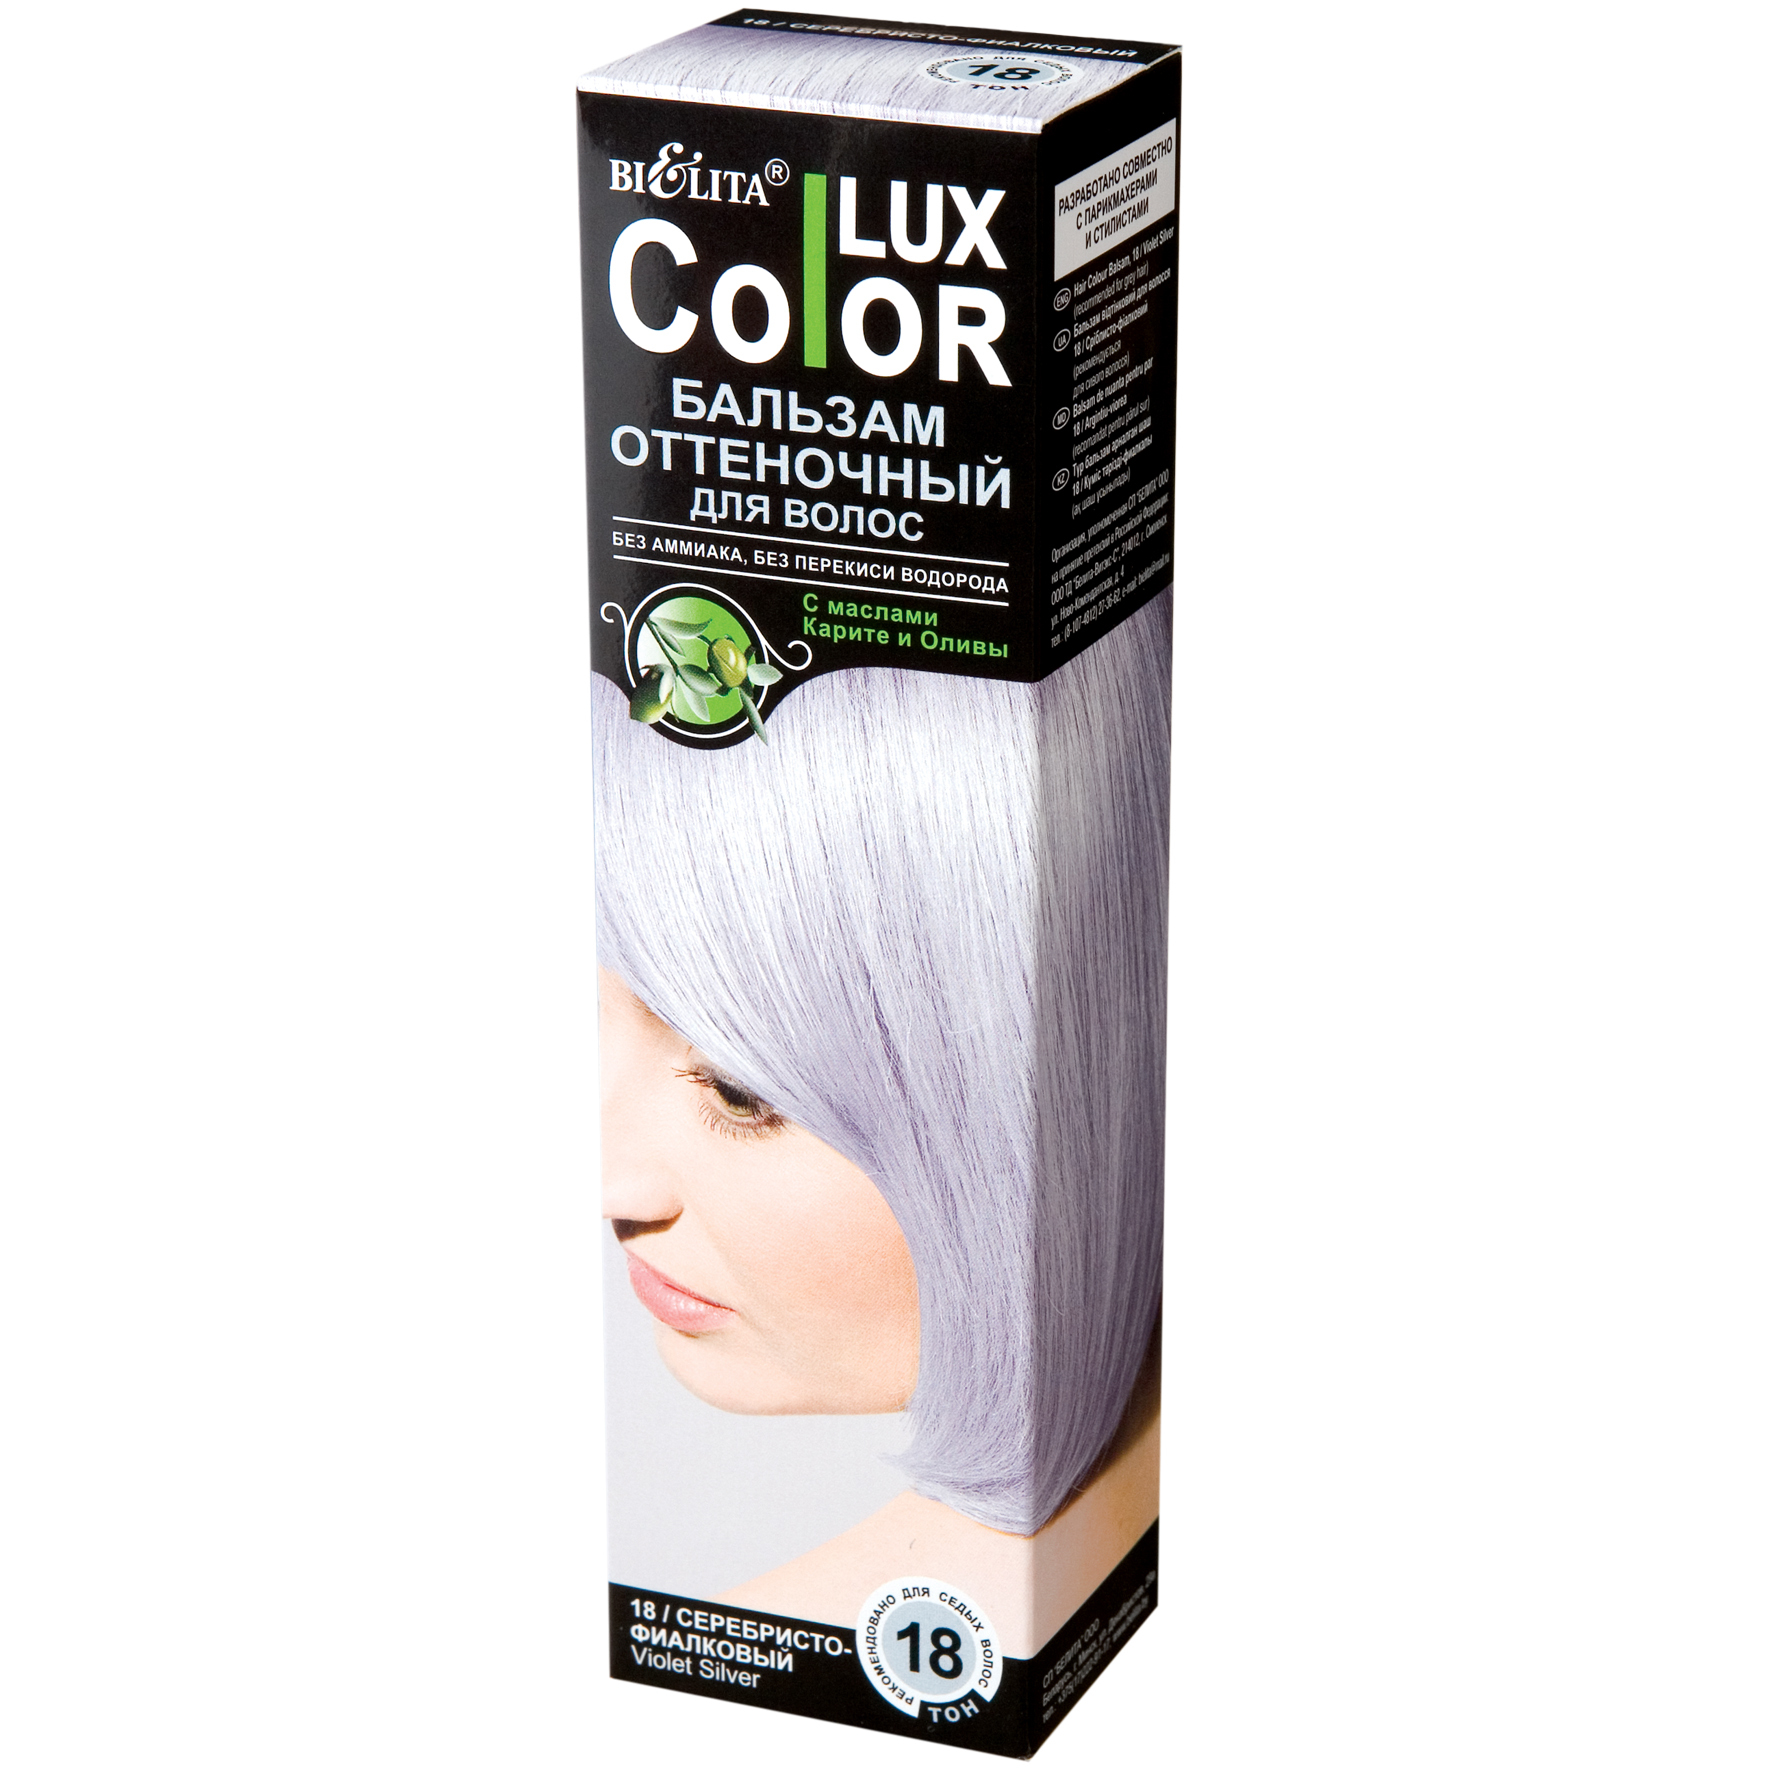 Оттеночный бальзам белорусский. Lux Color бальзам оттеночный Color Lux 18. Белита колор Люкс оттеночный бальзам. Оттеночный бальзам для волос "Color Lux" тон: 19 серебристый 100 мл. Bielita Color Lux бальзам оттеночный.